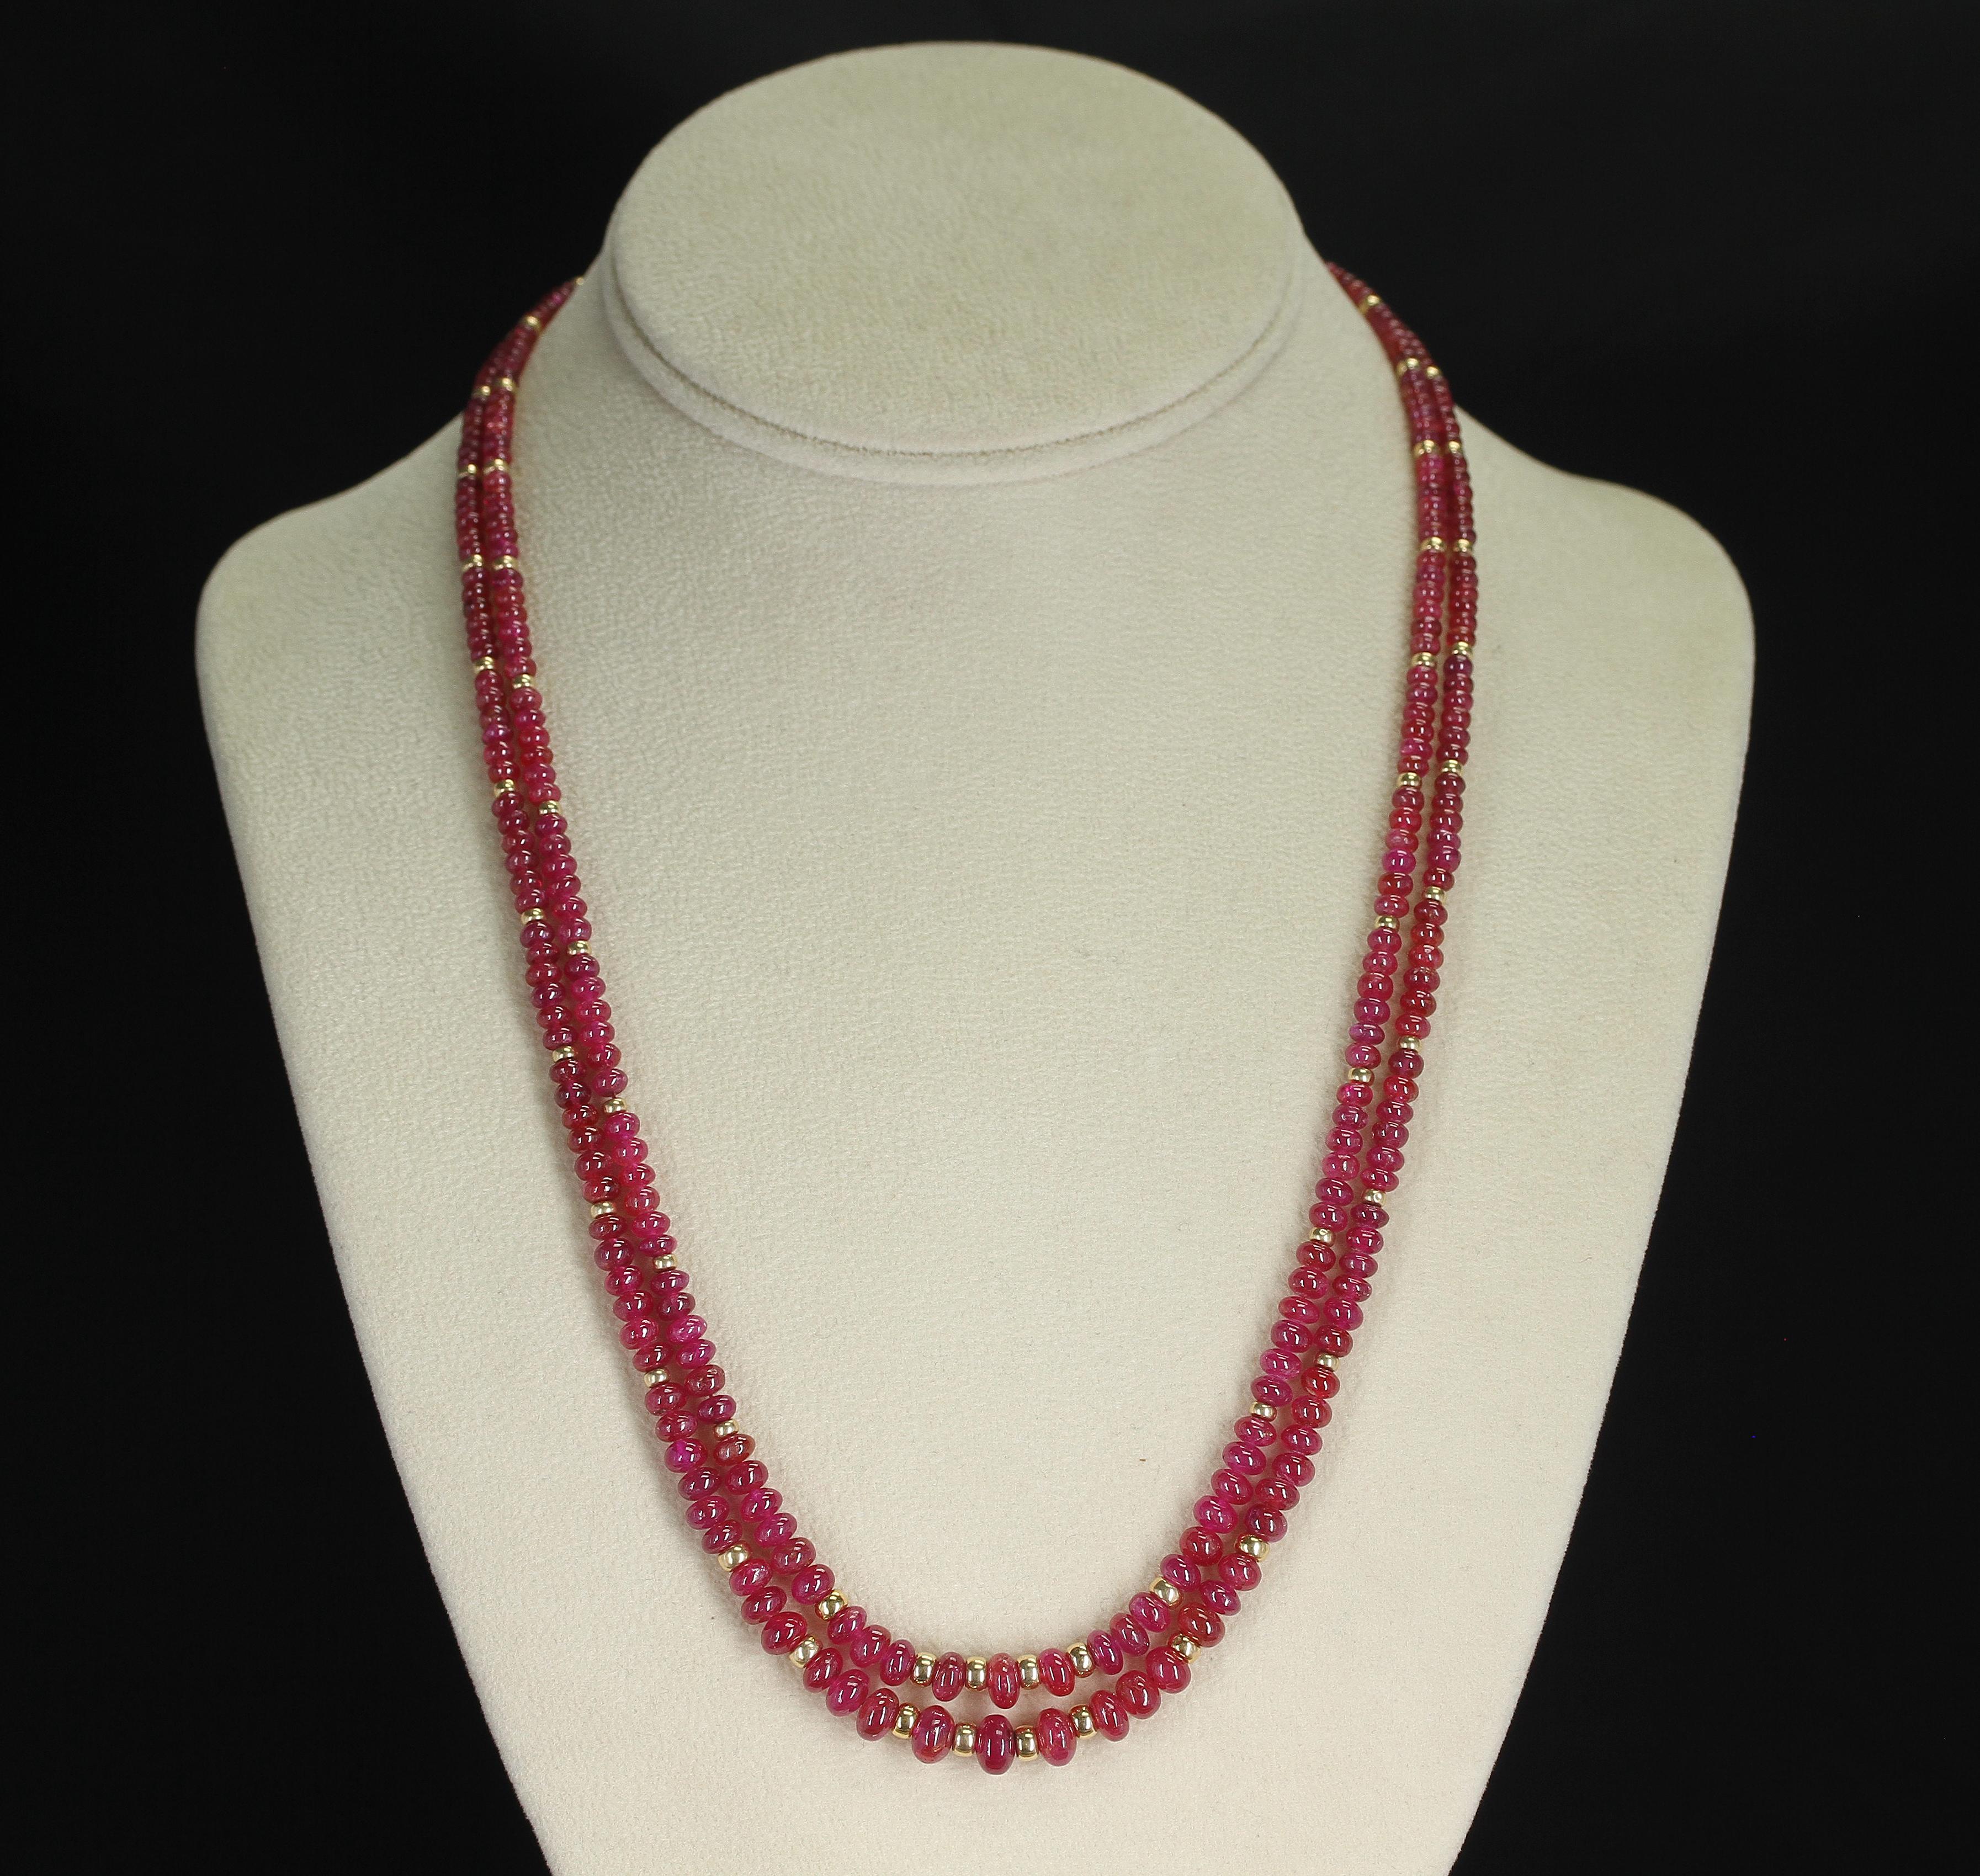 Un collier composé de deux rangs de perles de rubis lisses et unies avec des perles en or 14K. Les perles vont de 2,5 mm à 7 mm et pèsent au total 184 carats. Le fermoir est en or jaune 14K.